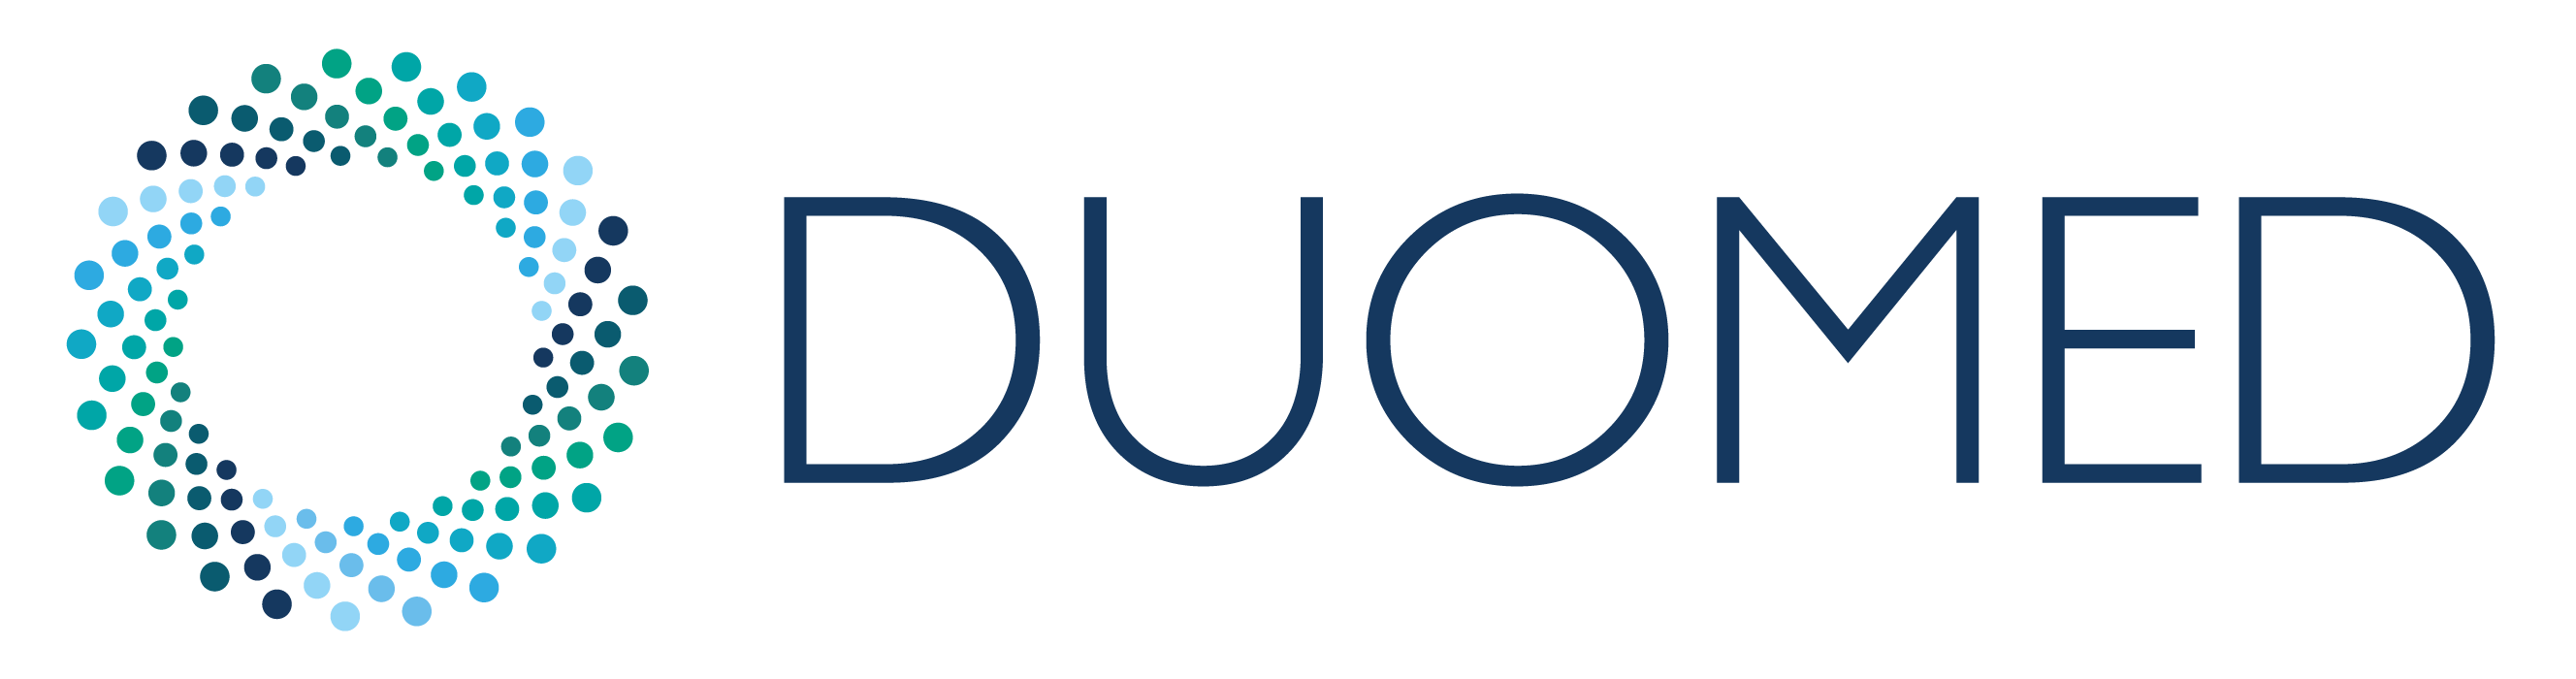 Duomed Belgium Logo